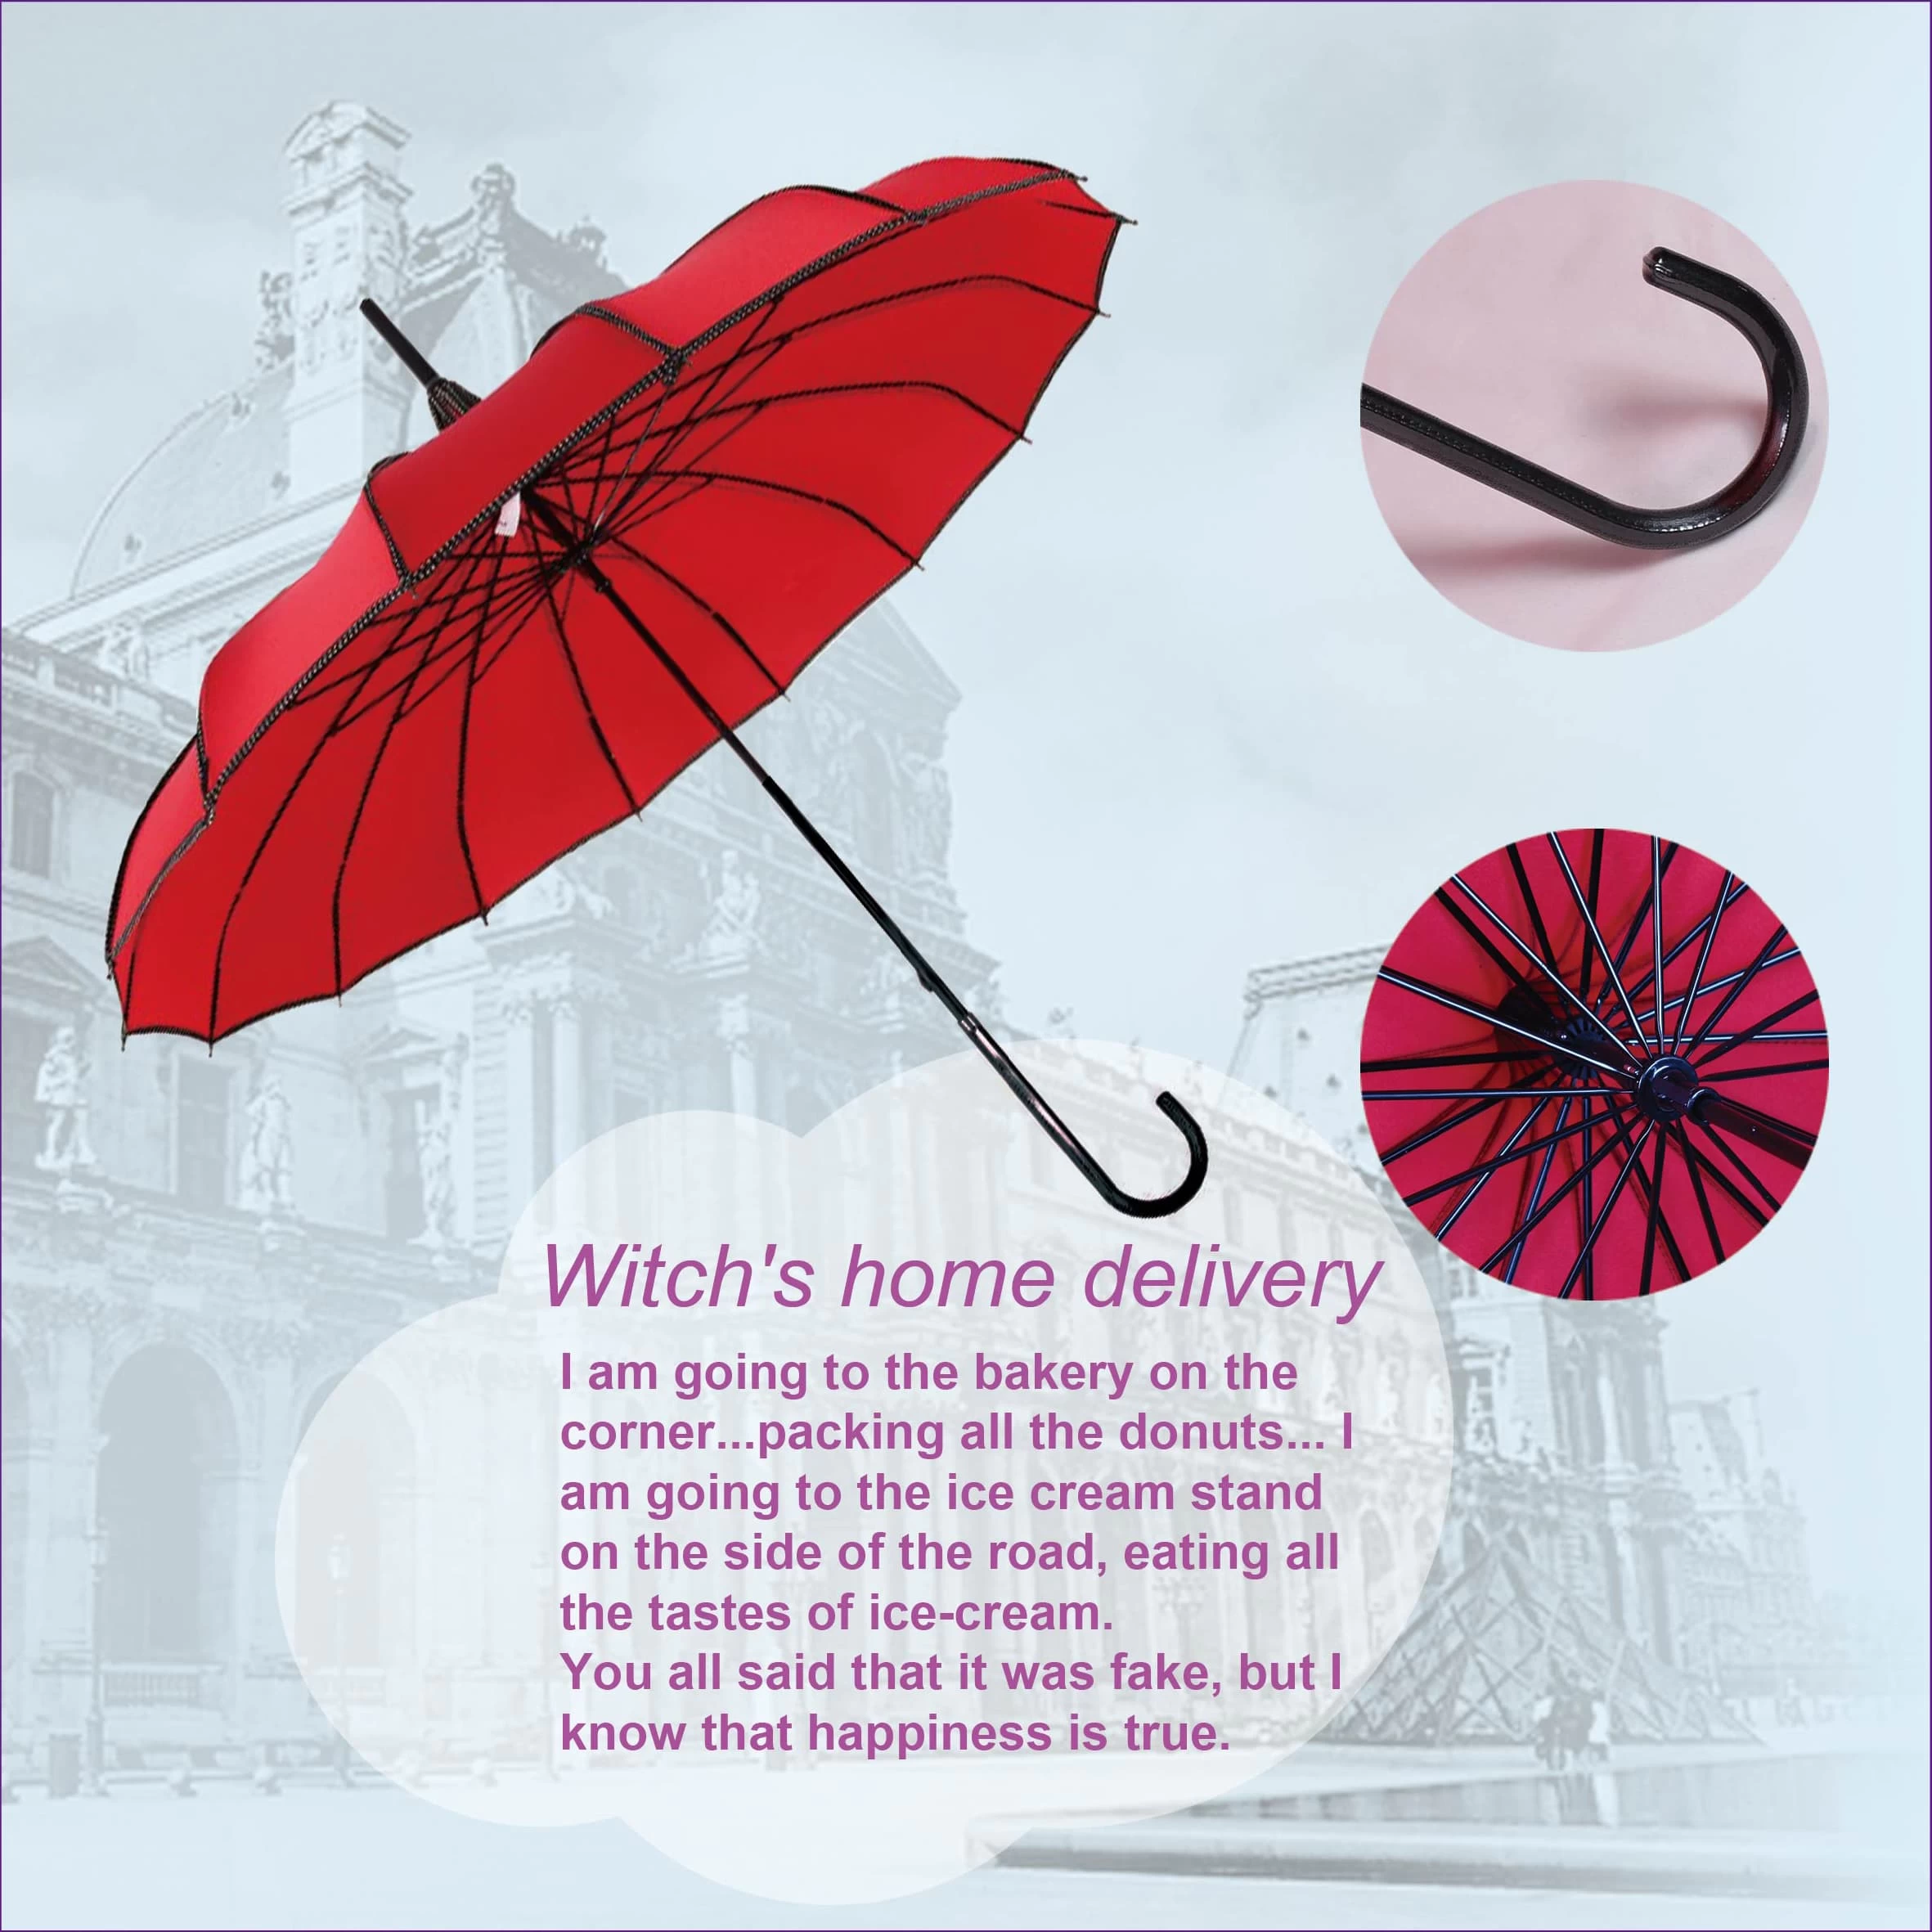 Warum nicht einen besser aussehenden Regenschirm wählen?